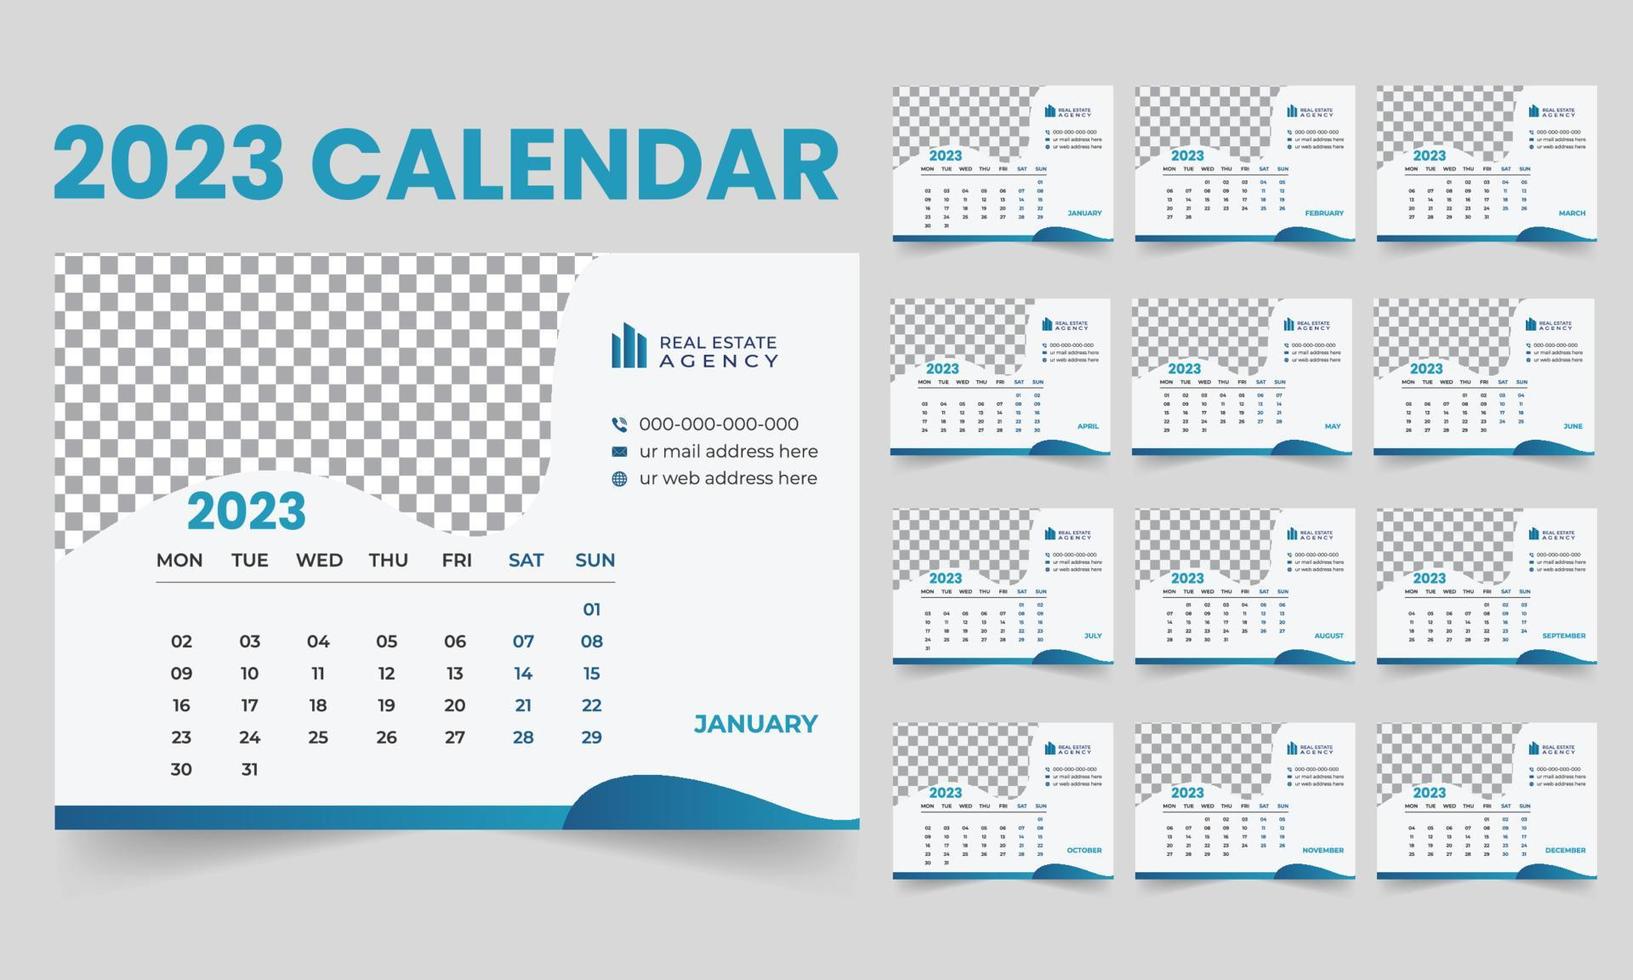 neues jahr modernes schreibtischkalender-vorlagendesign 2023 woche beginnt am montag vektor